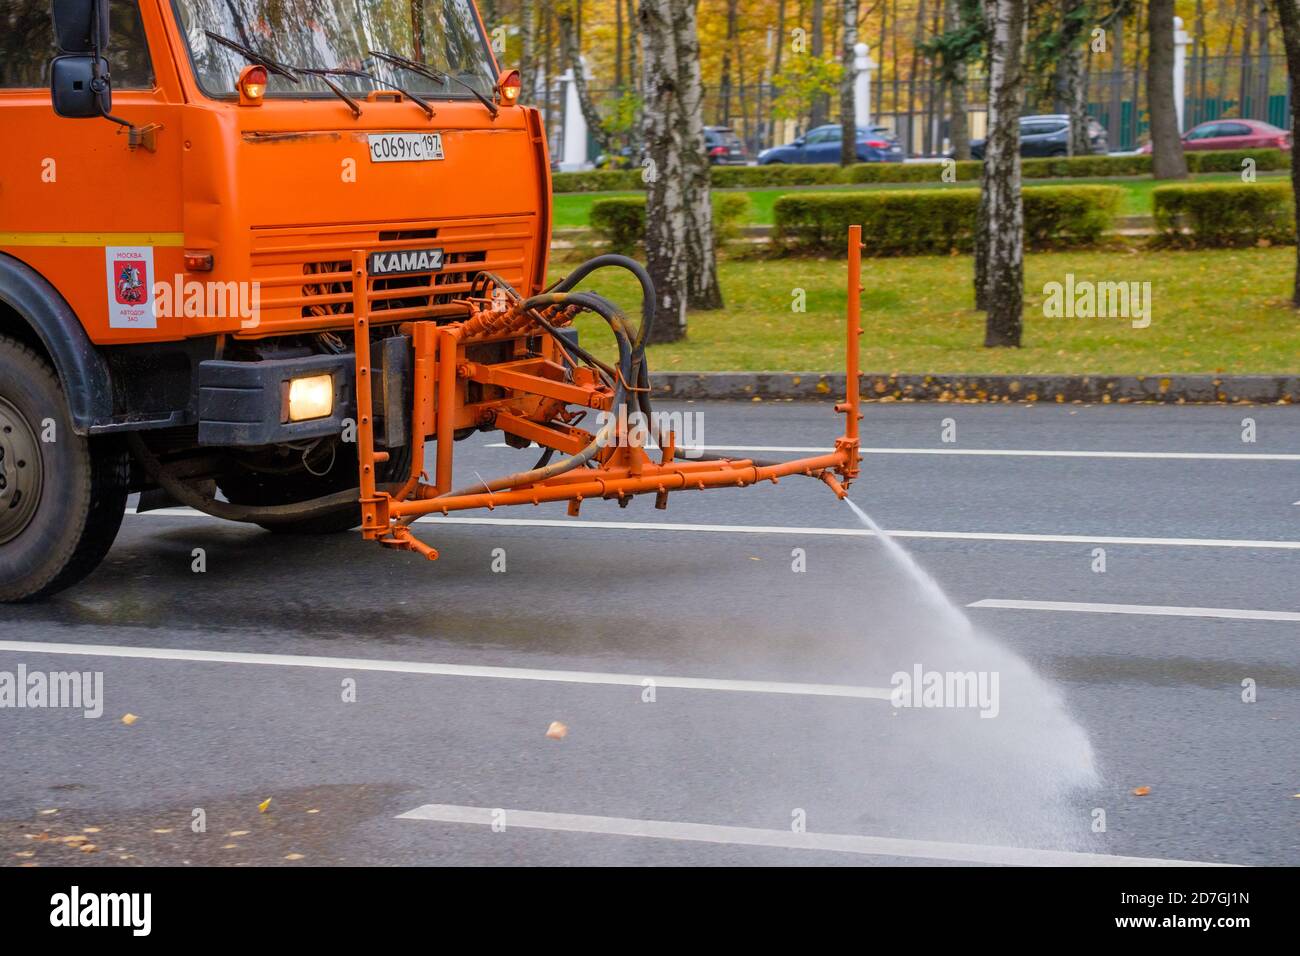 Mosca. Russia. 11 ottobre 2020. Un camion pesante arancione lava le foglie autunnali fuori dalla strada asfaltata. Il lavoro dei servizi pubblici in città. Autunno Foto Stock